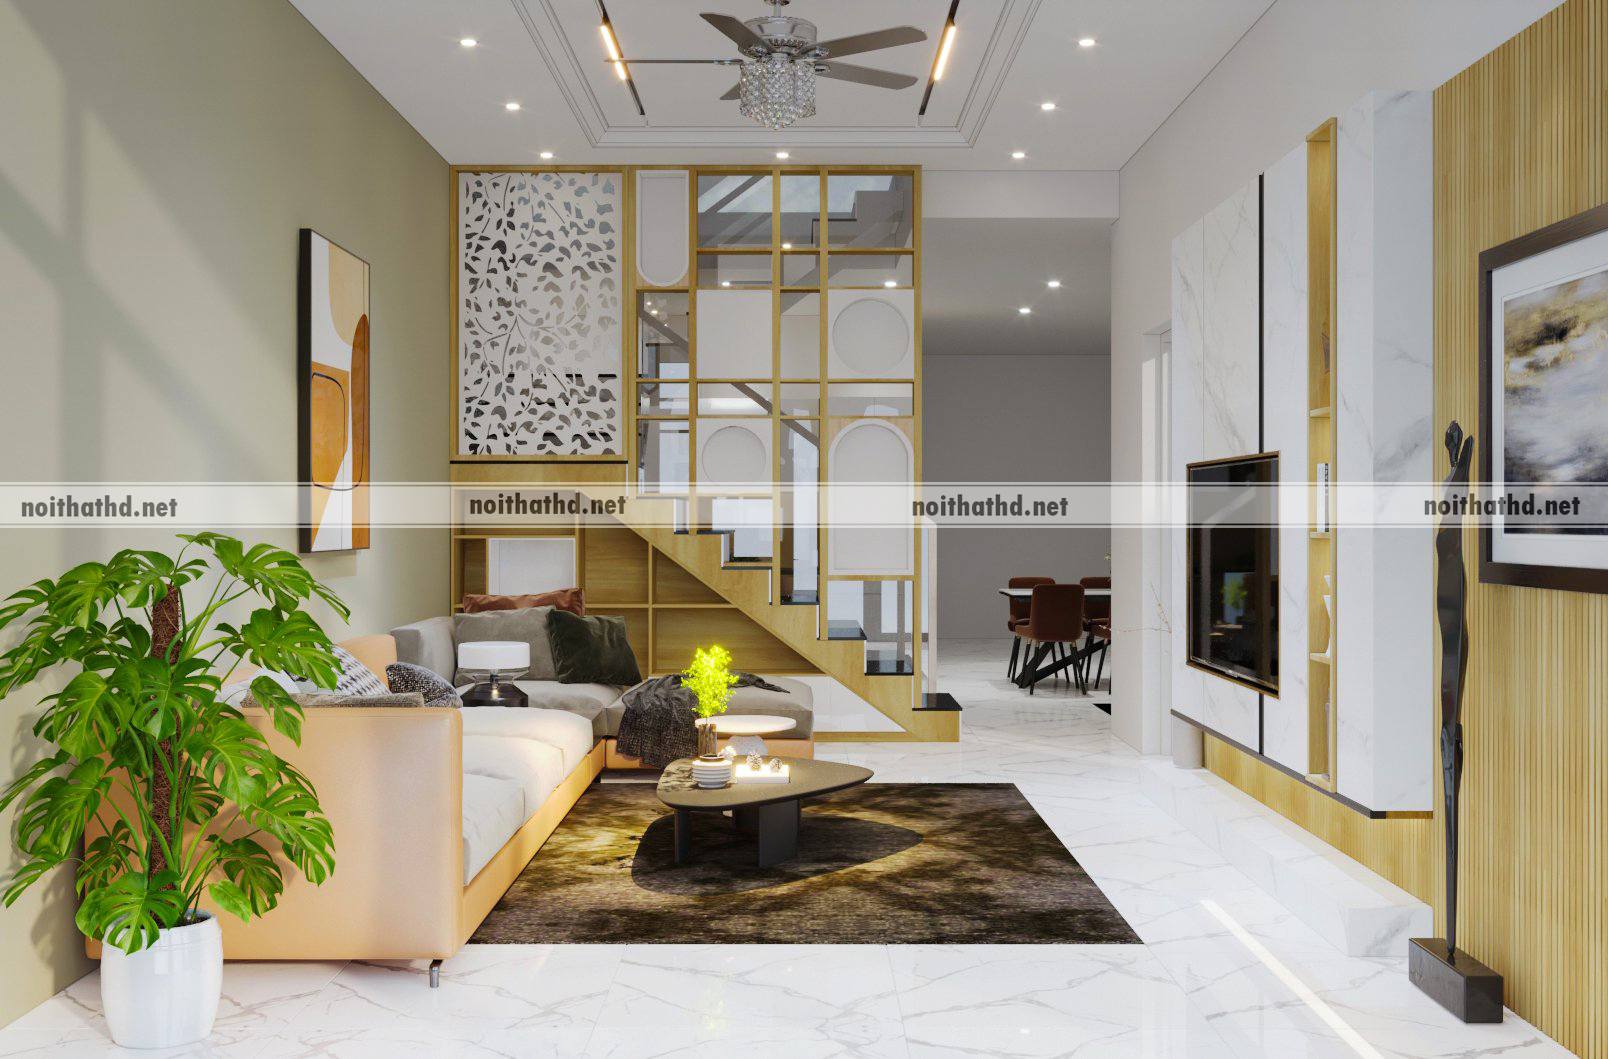 Thiết kế nội thất Tịnh Phong - Khám phá không gian sống sang trọng với thiết kế nội thất tinh tế từ Tịnh Phong. Với đội ngũ kiến trúc sư và nhân viên tư vấn chuyên nghiệp, Tịnh Phong mang đến cho bạn những ý tưởng độc đáo và phương án thiết kế đa dạng, từ phong cách cổ điển đến hiện đại.